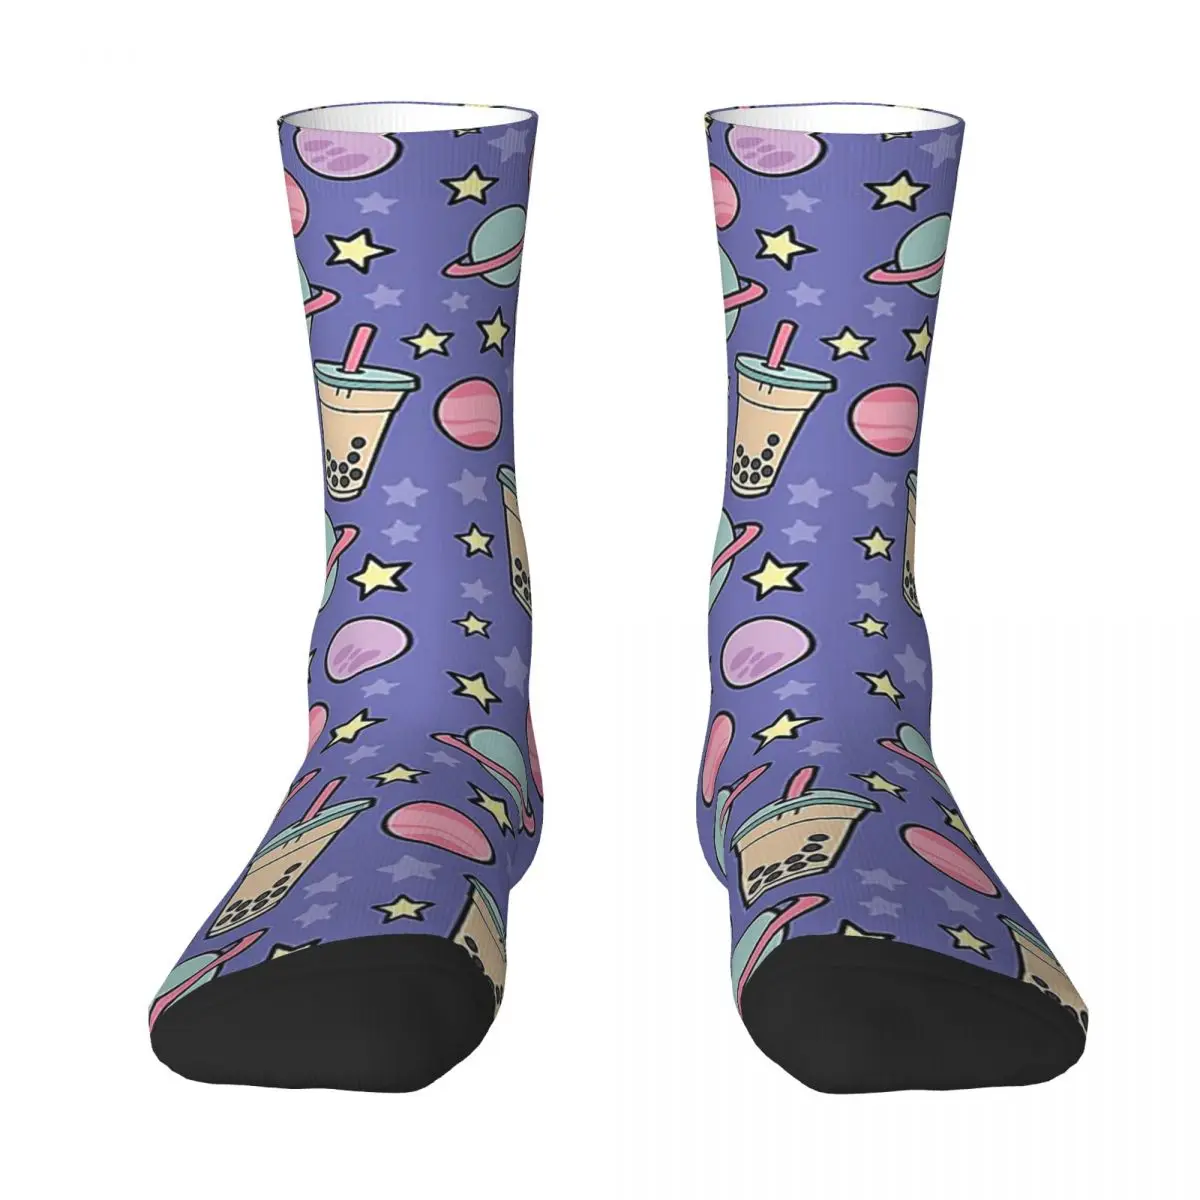 All Seasons Crew Чулки Bubble Tea Universe - Звездные носки с рисунком Каваи Боба Гэлакси, длинные носки, Аксессуары для мужчин и женщин